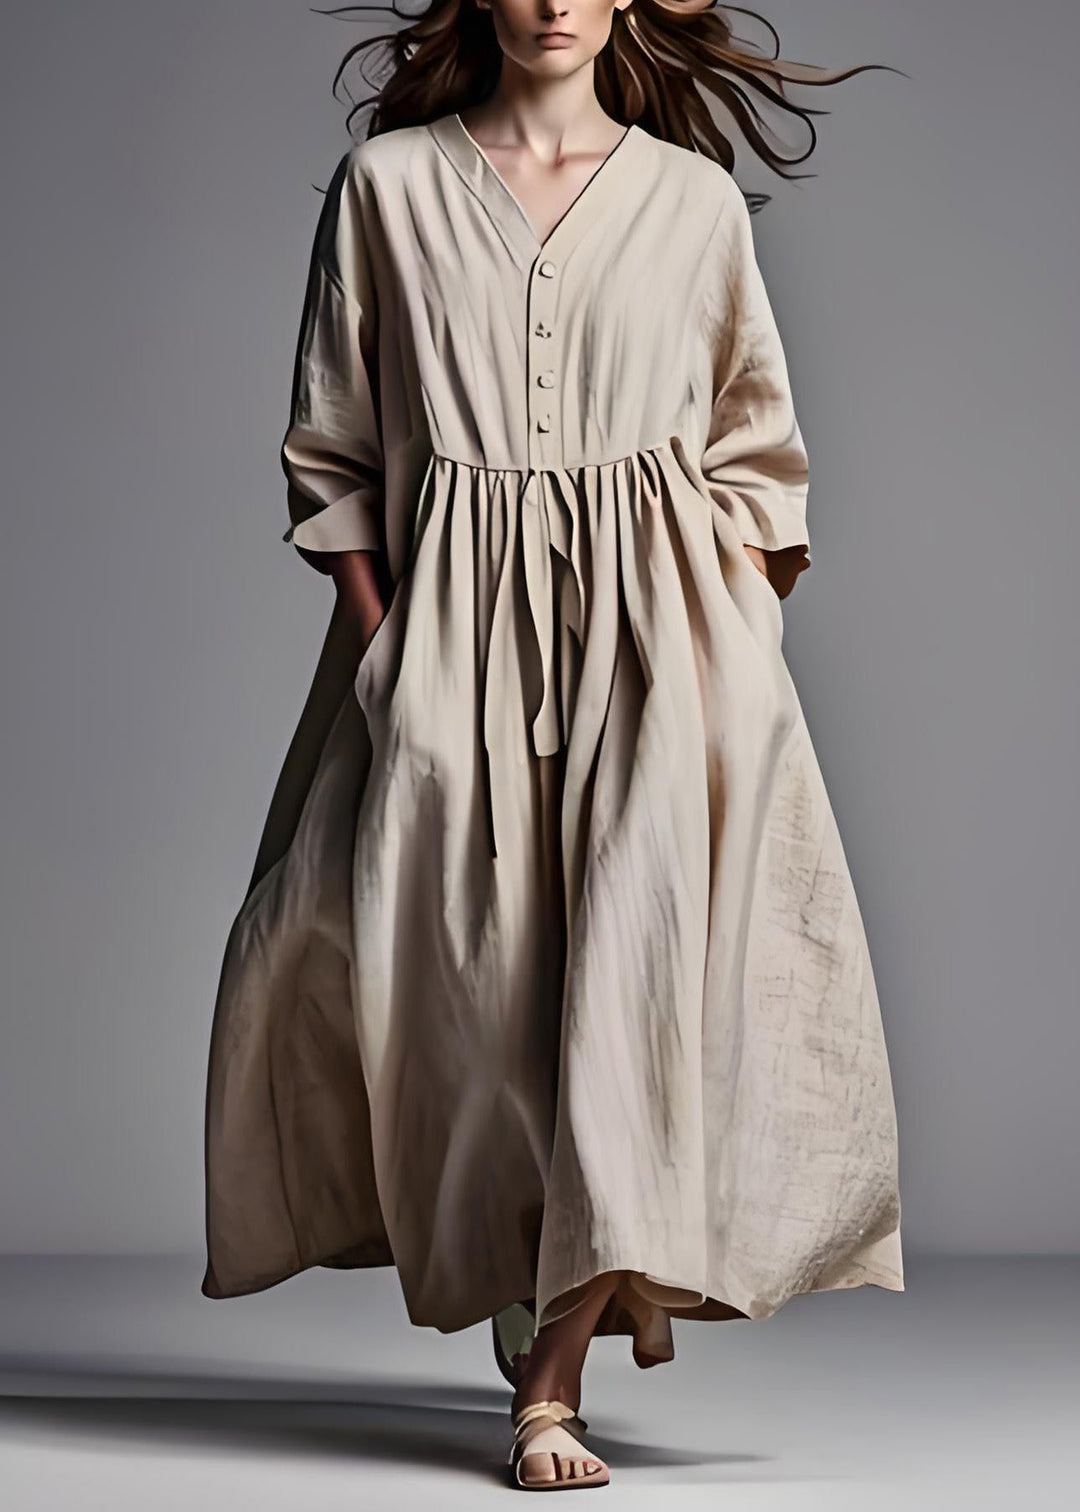 Plus Size Beige V Neck Wrinkled Patchwork Cotton Dresses Long Sleeve